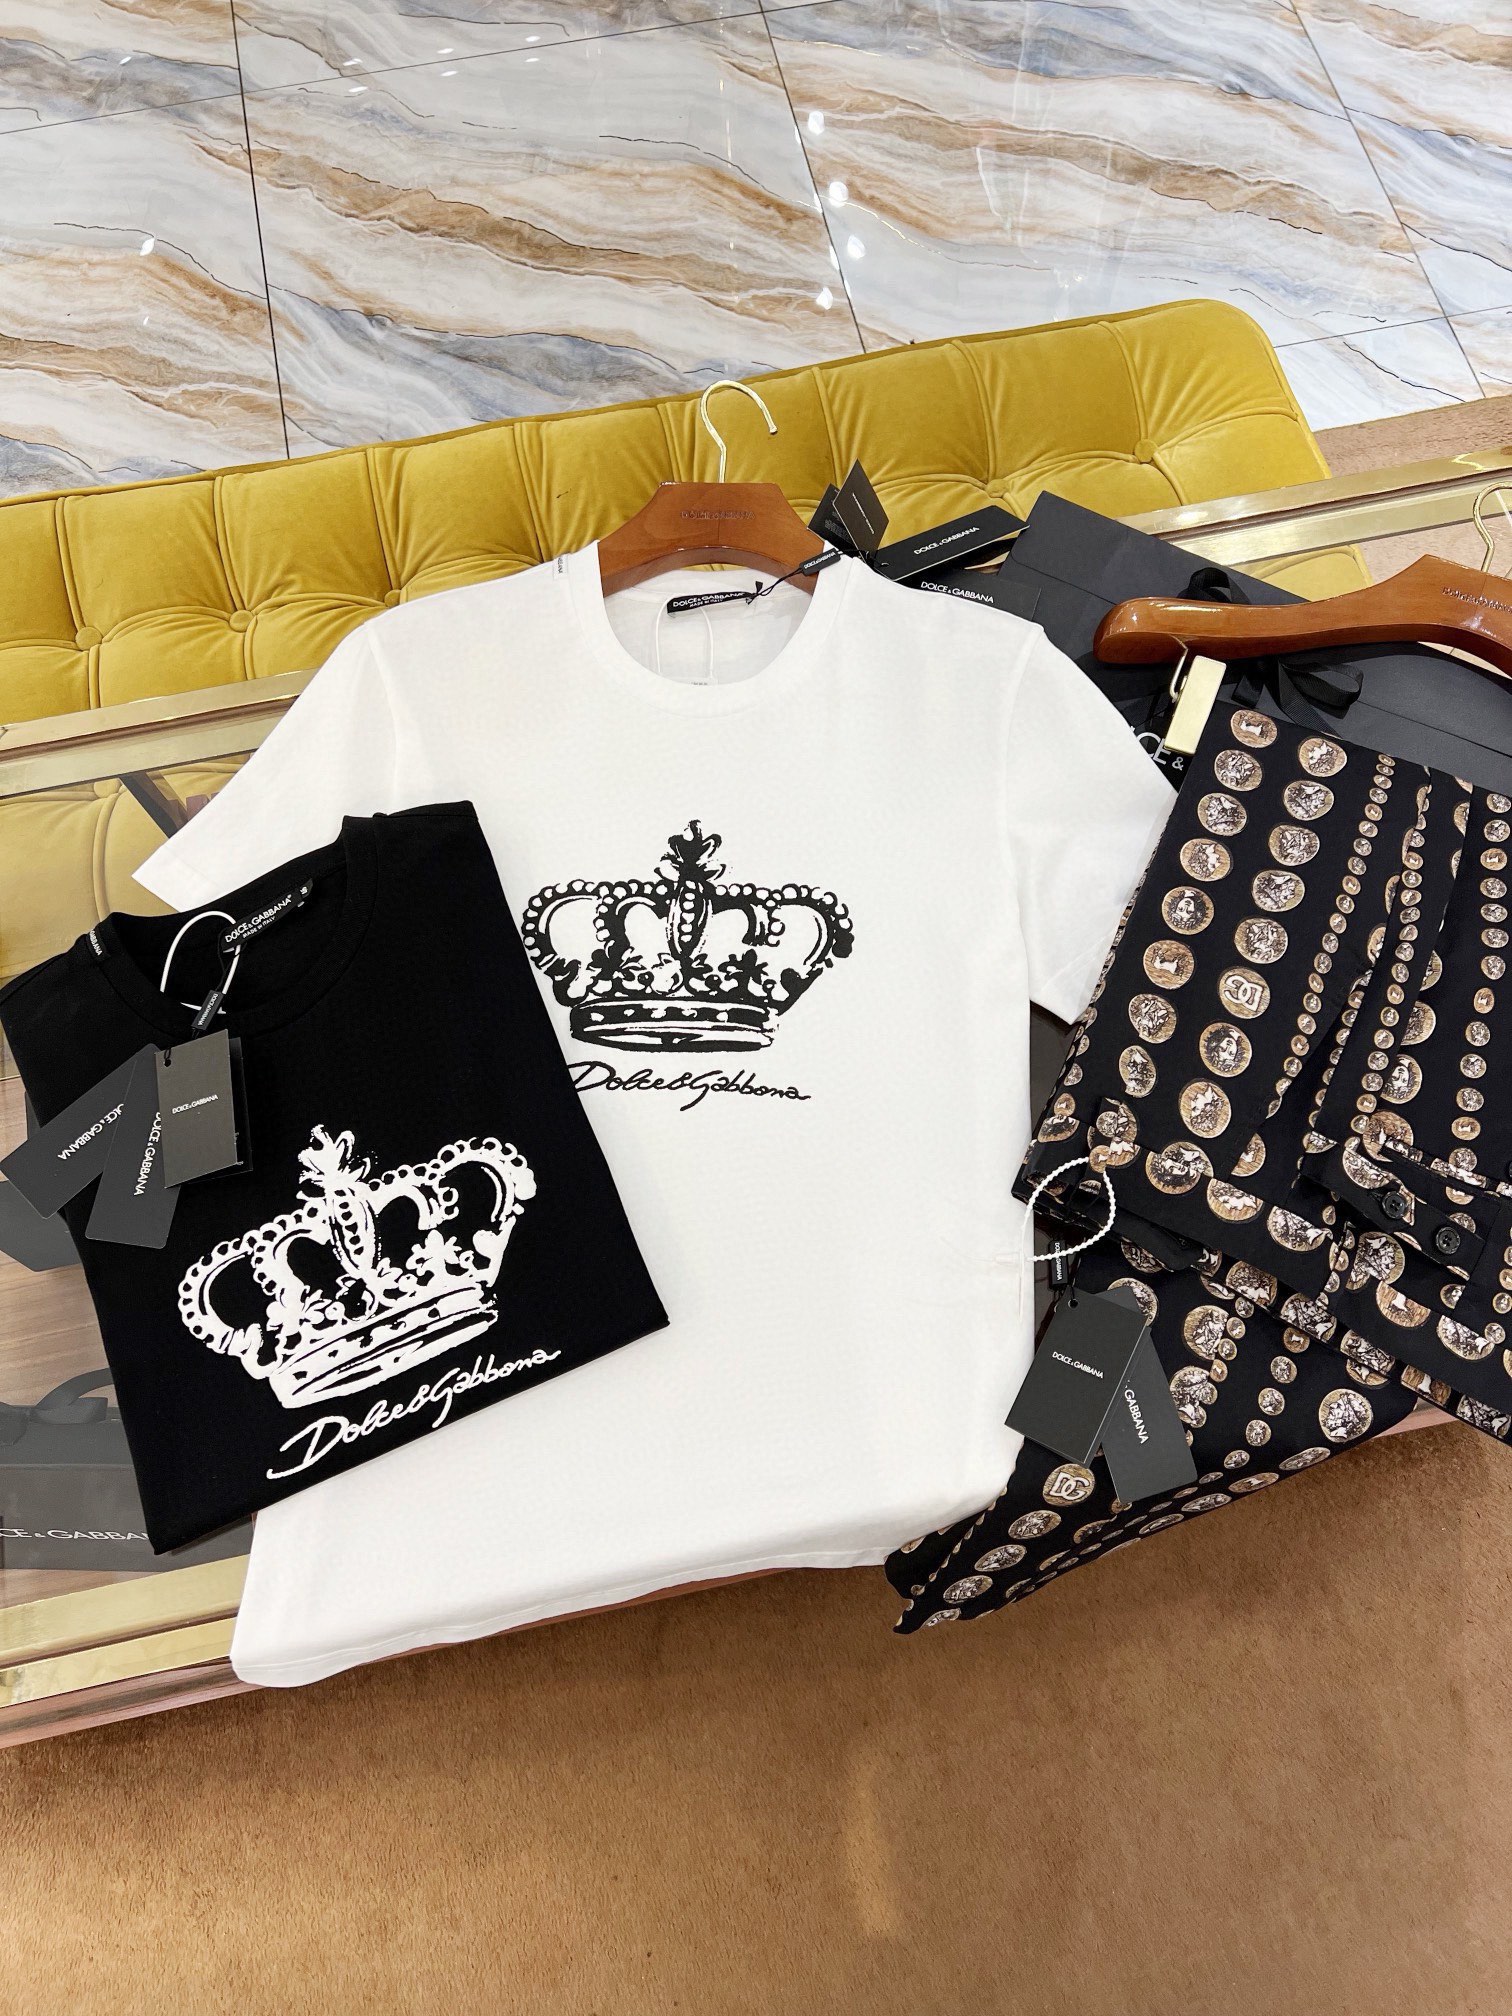 SS新款T恤完美皇冠标识logo立体发泡印花工艺纯棉面料修身版型黑/白码数44-54